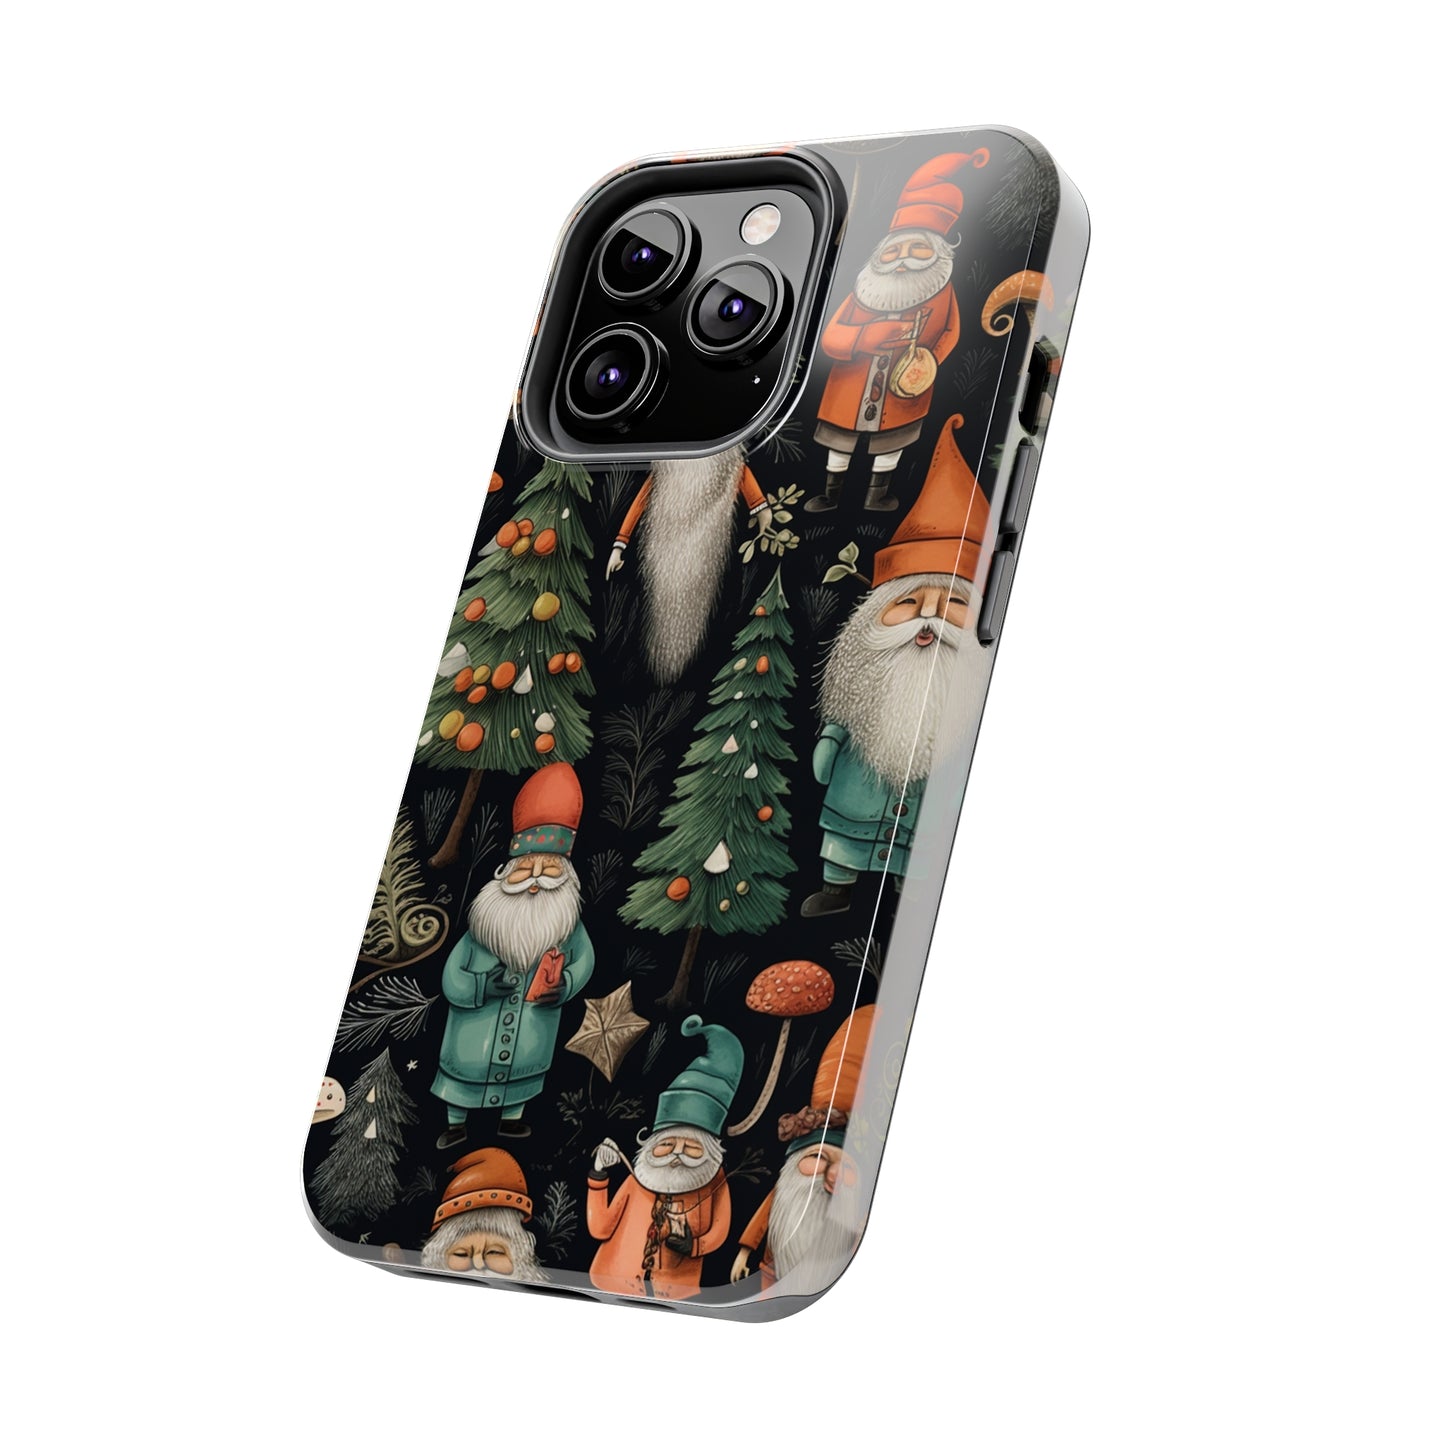 Santa Claus Holiday Phone Cover